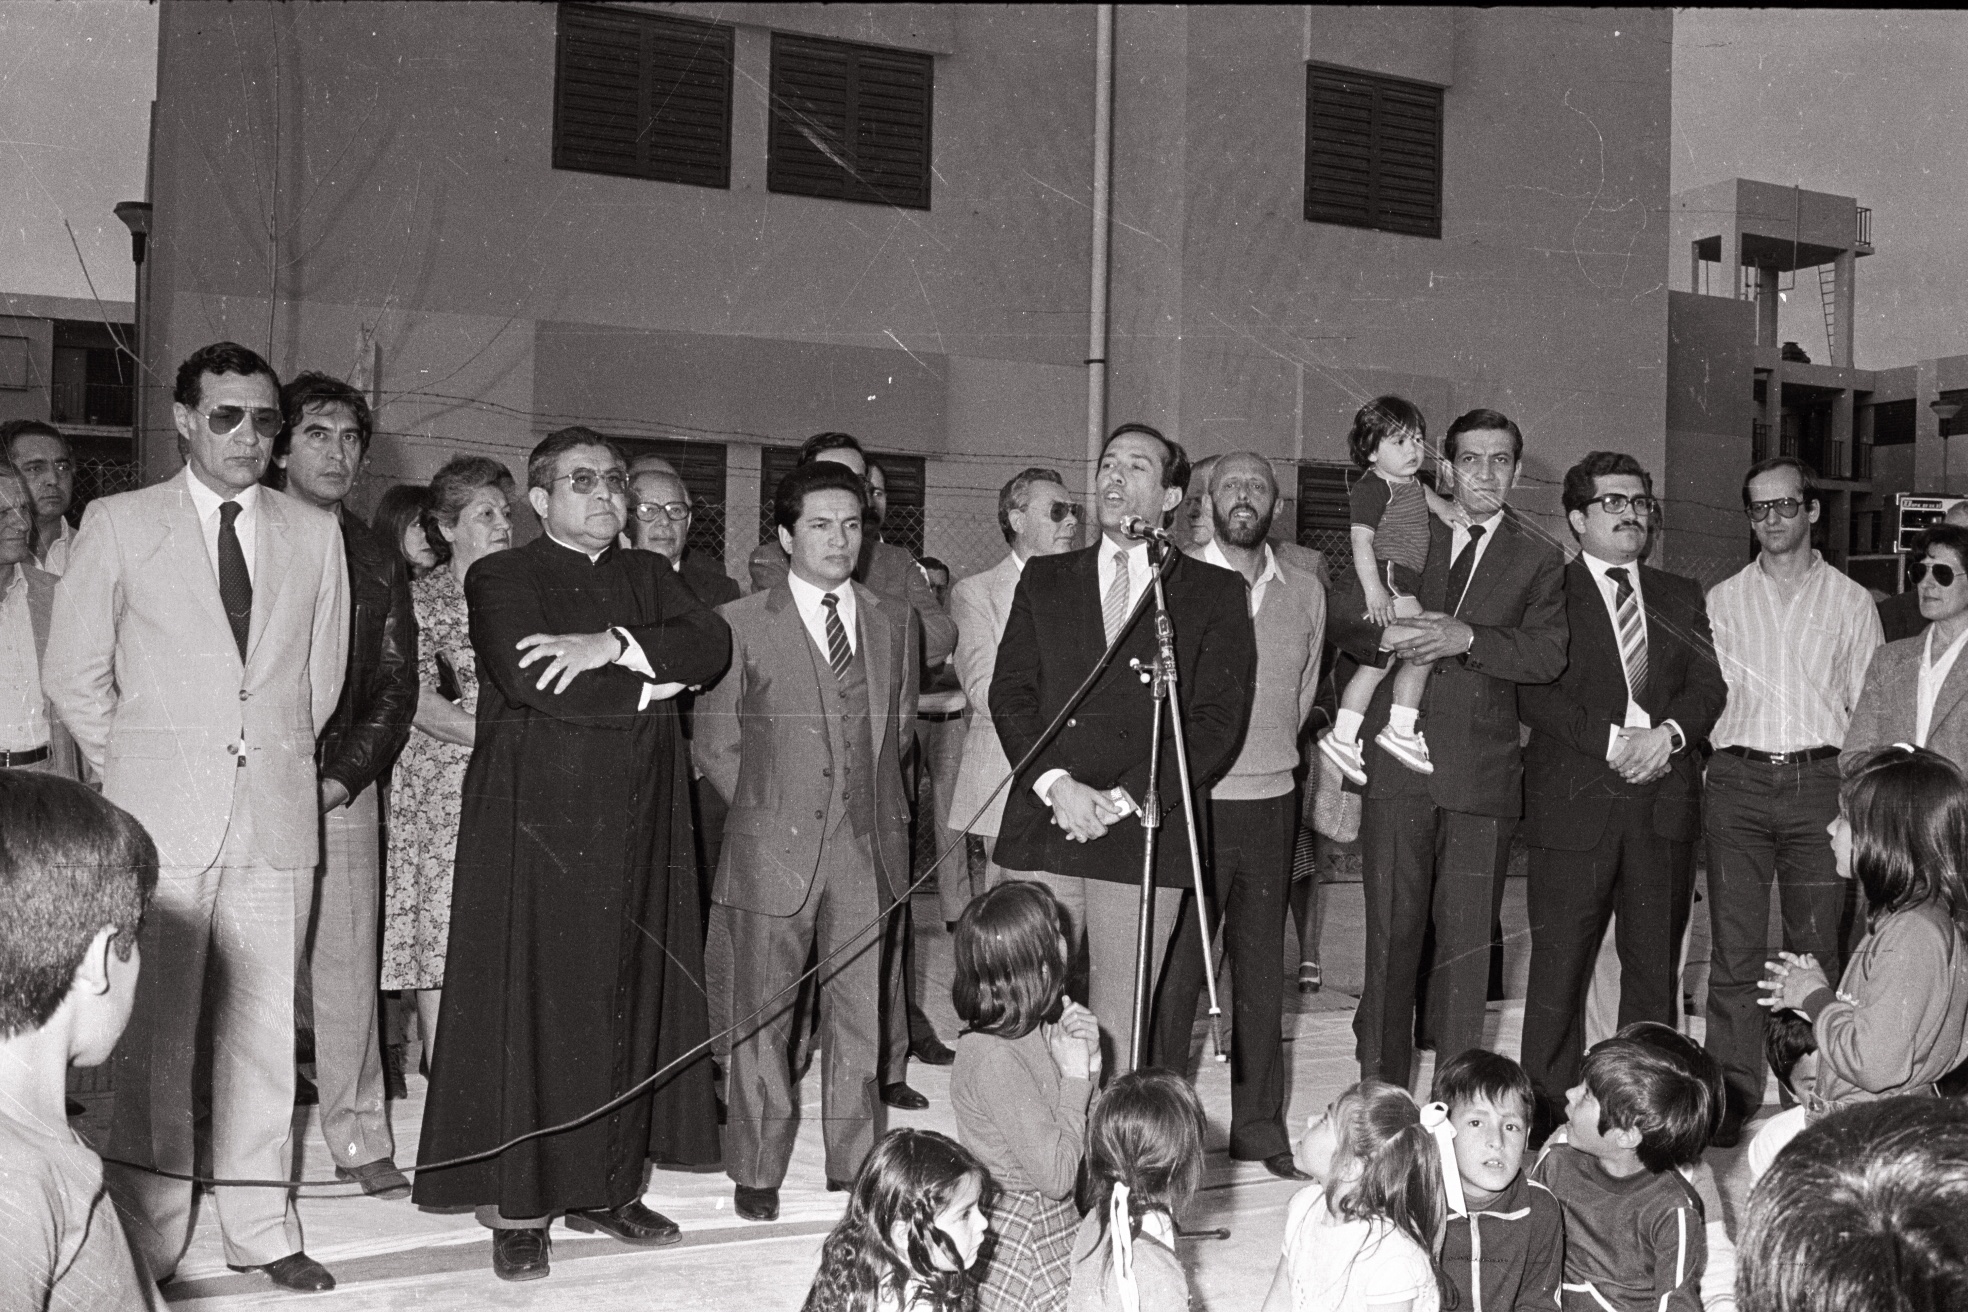 El 12-09-1985 el gobernador encabeza un acto de entrega de viviendas en Villa Mercedes. Lo acompañan los ministros Carlos Ponce, Eduardo Endeiza y Pedro Maranguello, y Monseñor Francisco Miranda.